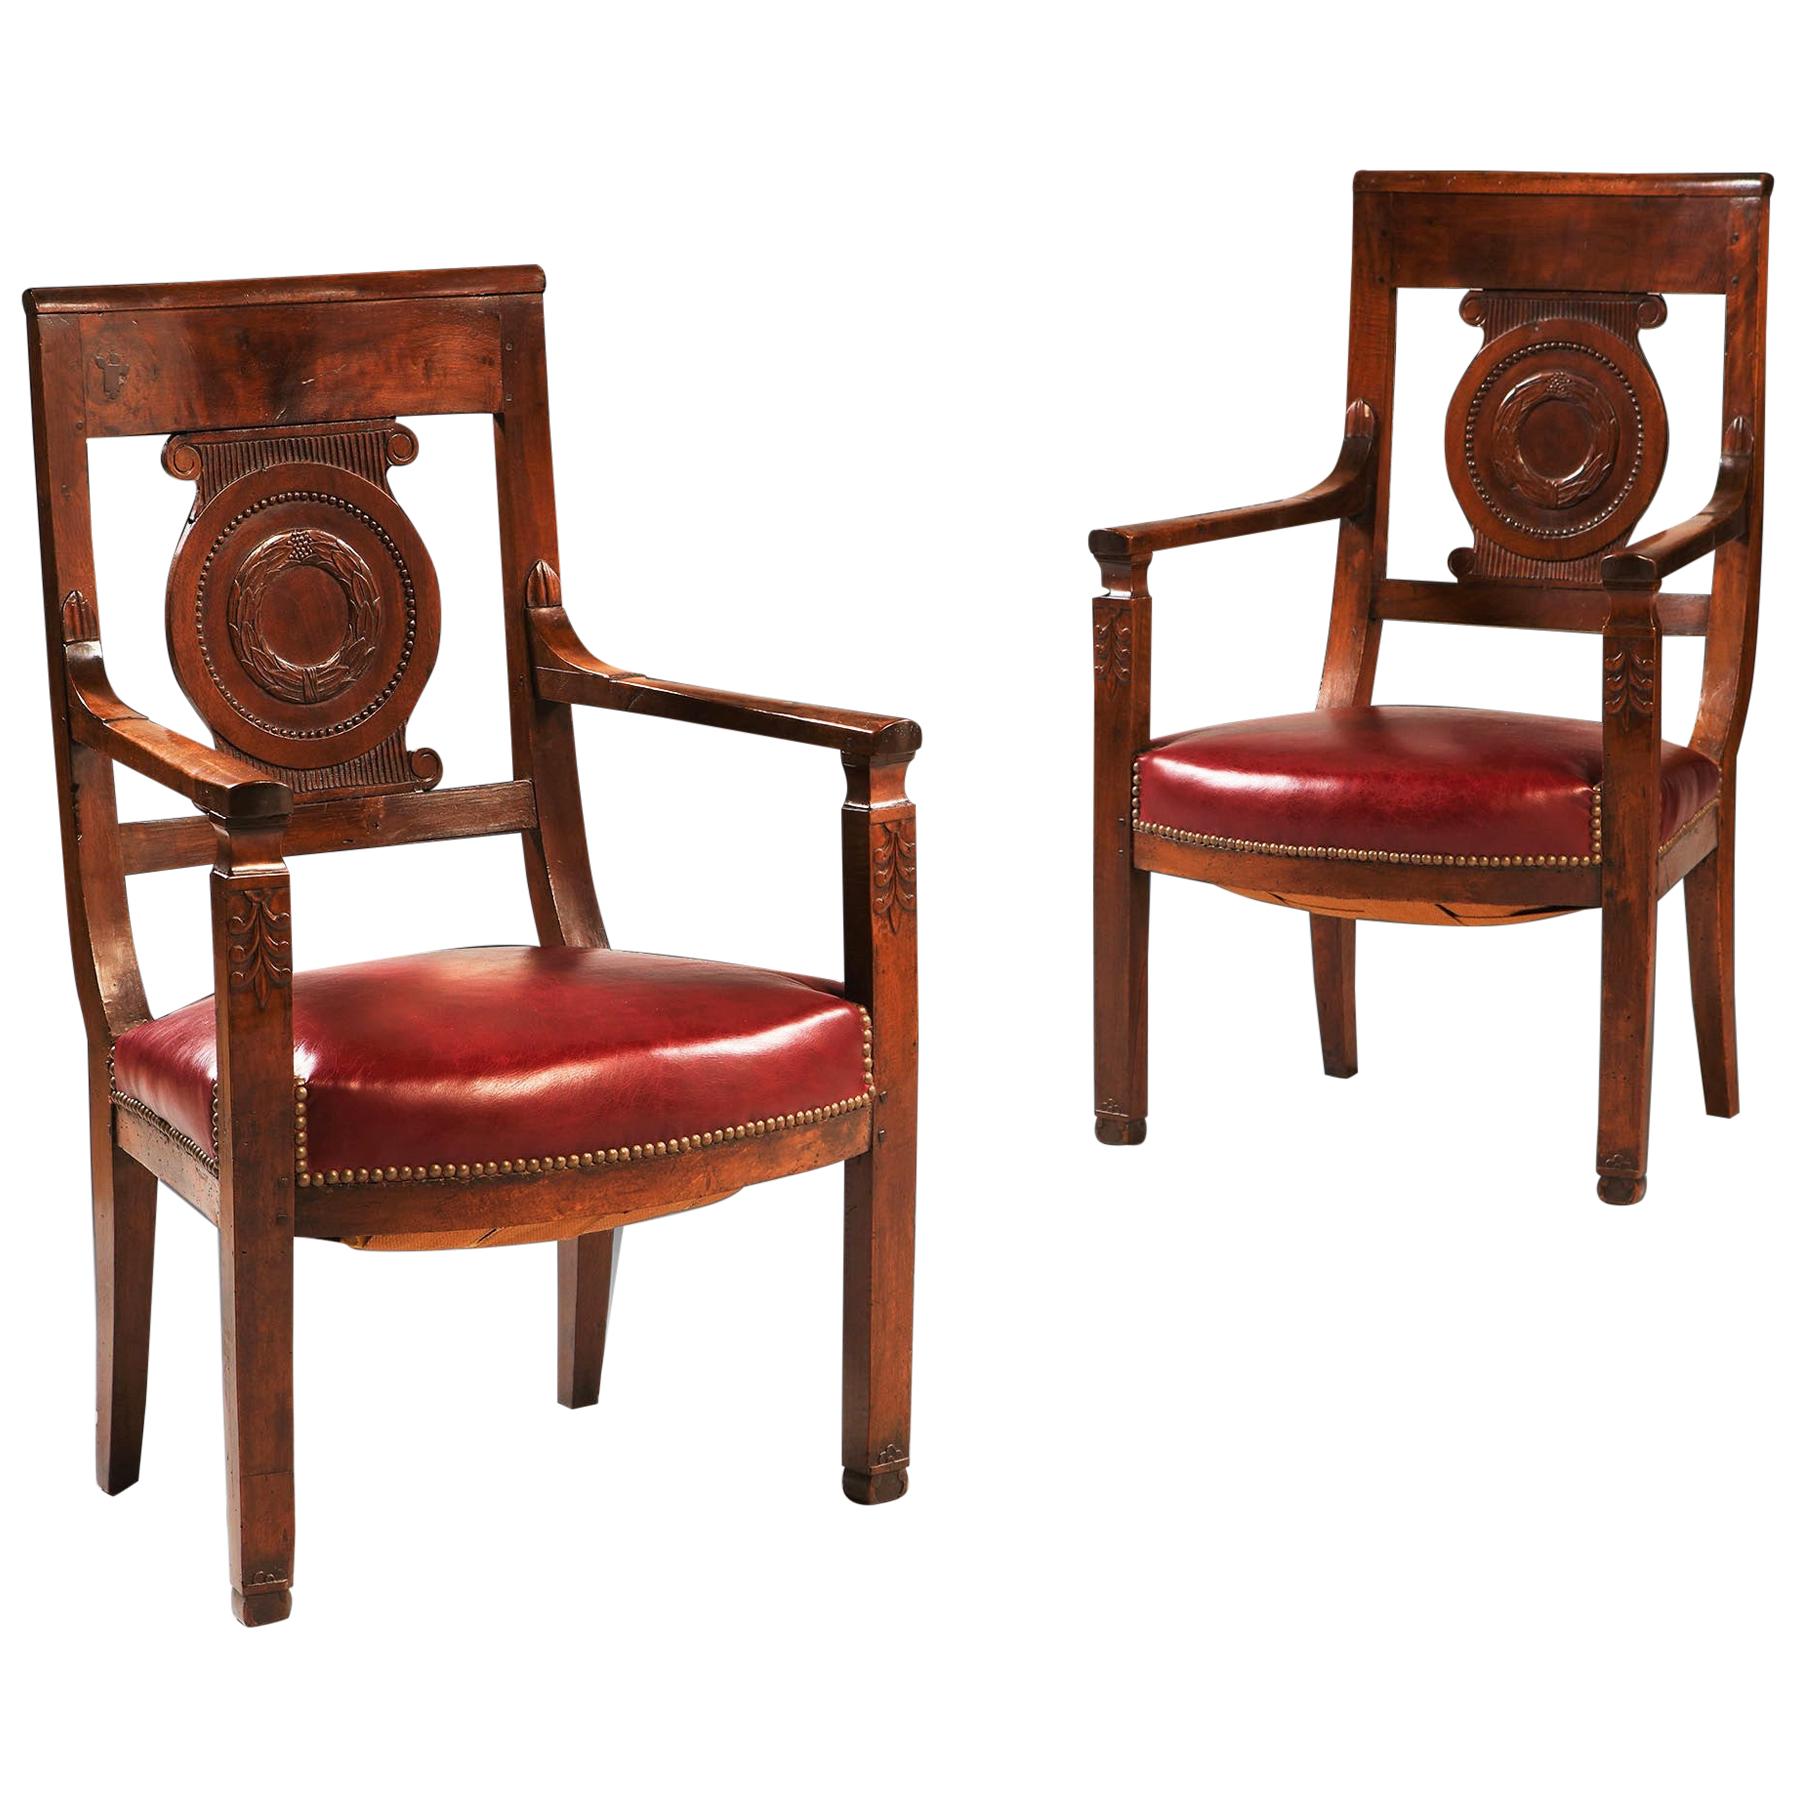 Paire de fauteuils ou fauteuils rouges Empire français en acajou et bois de marron du 19ème siècle